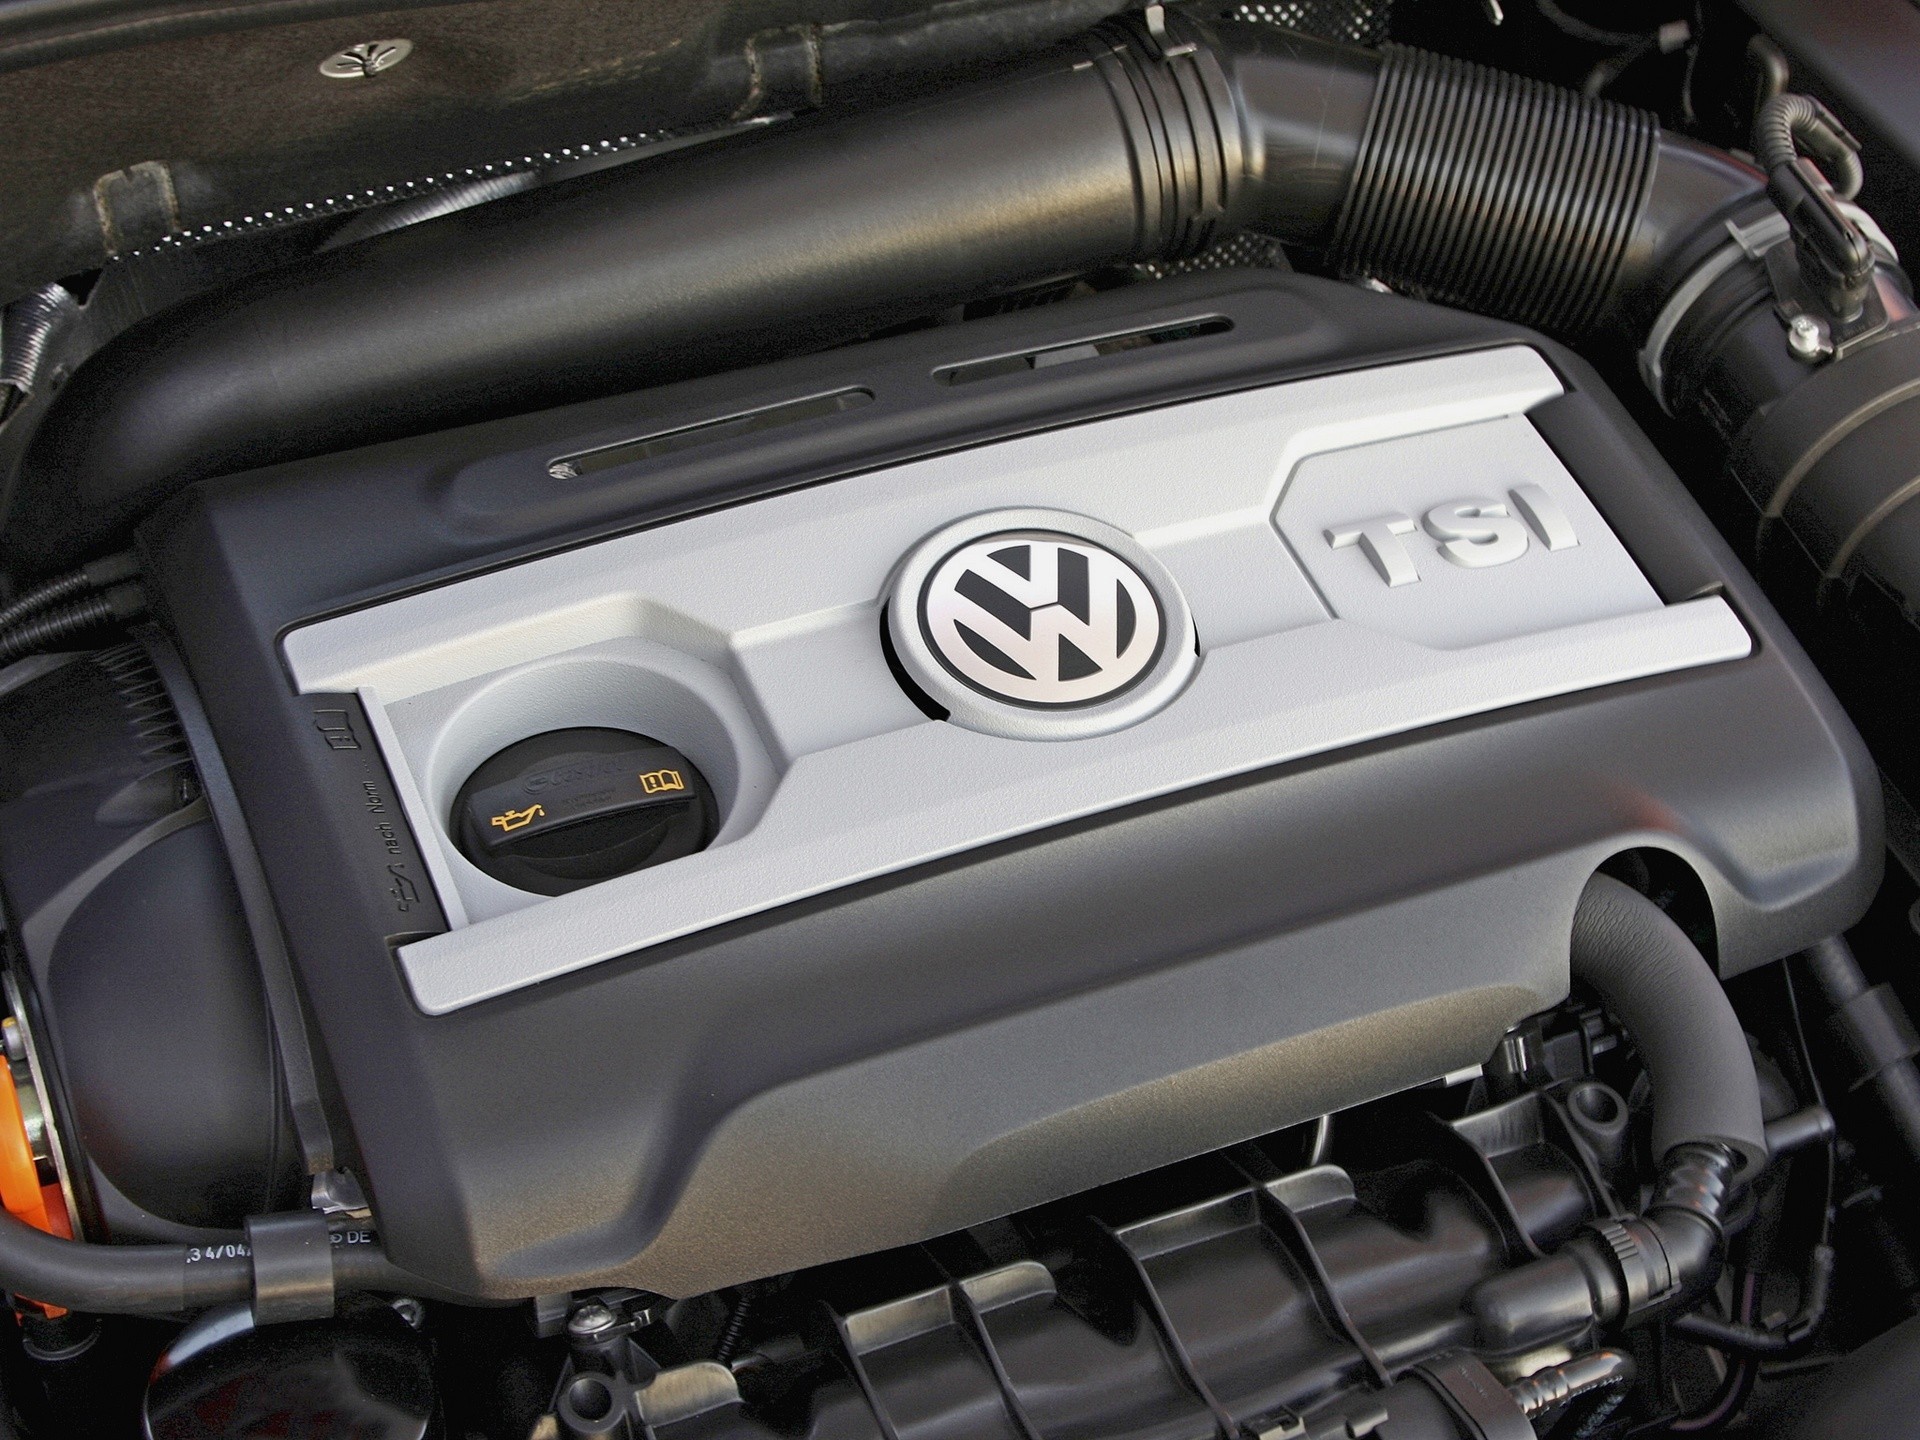 Enjin 1.8 TSI/TFSI Volkswagen - penggunaan bahan api yang rendah dan minyak yang banyak. Bolehkah mitos ini dilenyapkan?